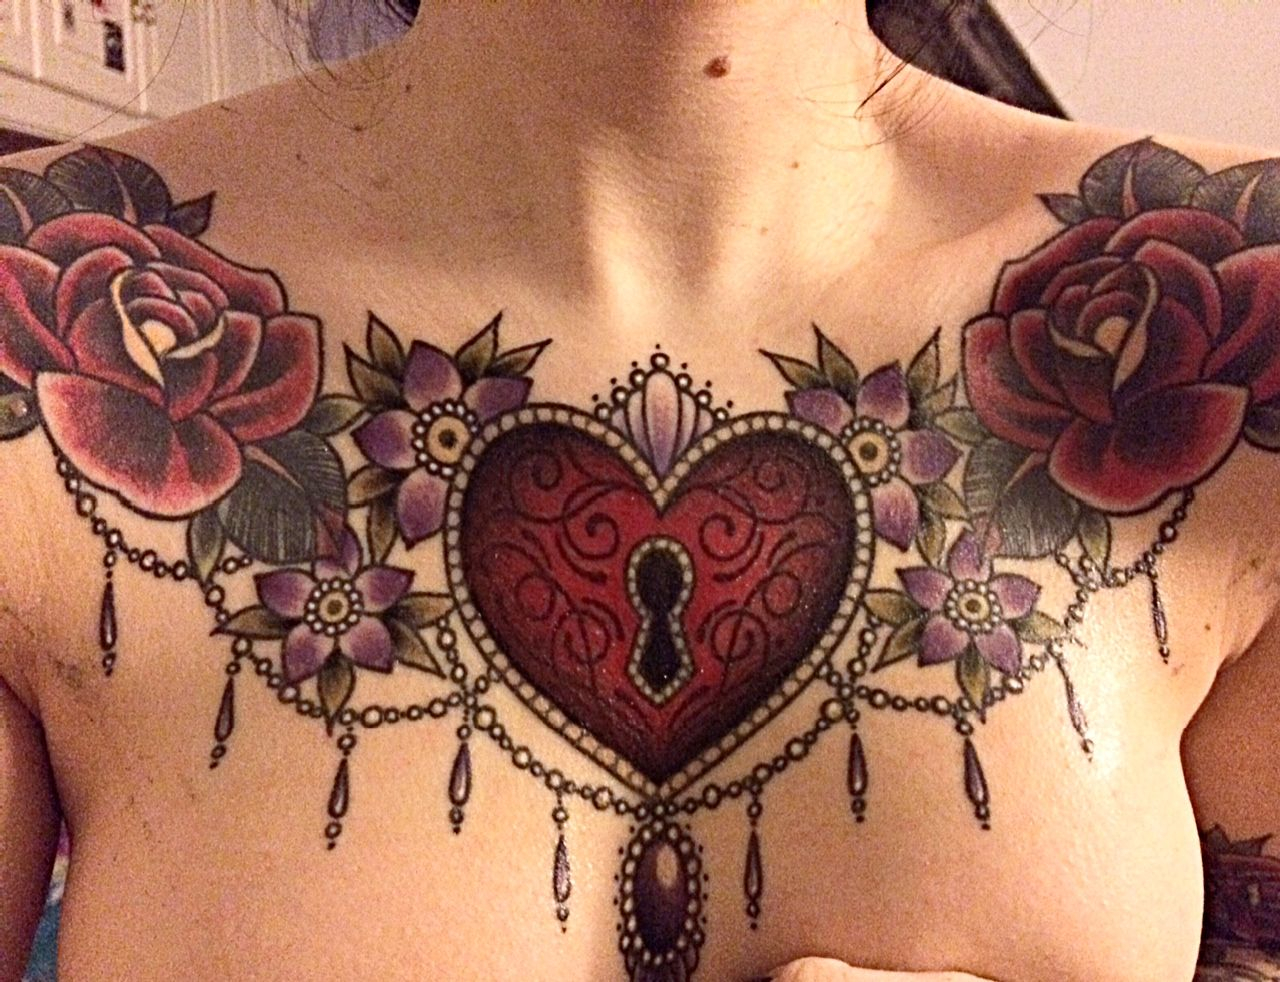 Chestpiece Gemma Helfire Tattoos Chest Piece Tattoos Tattoos with regard to...